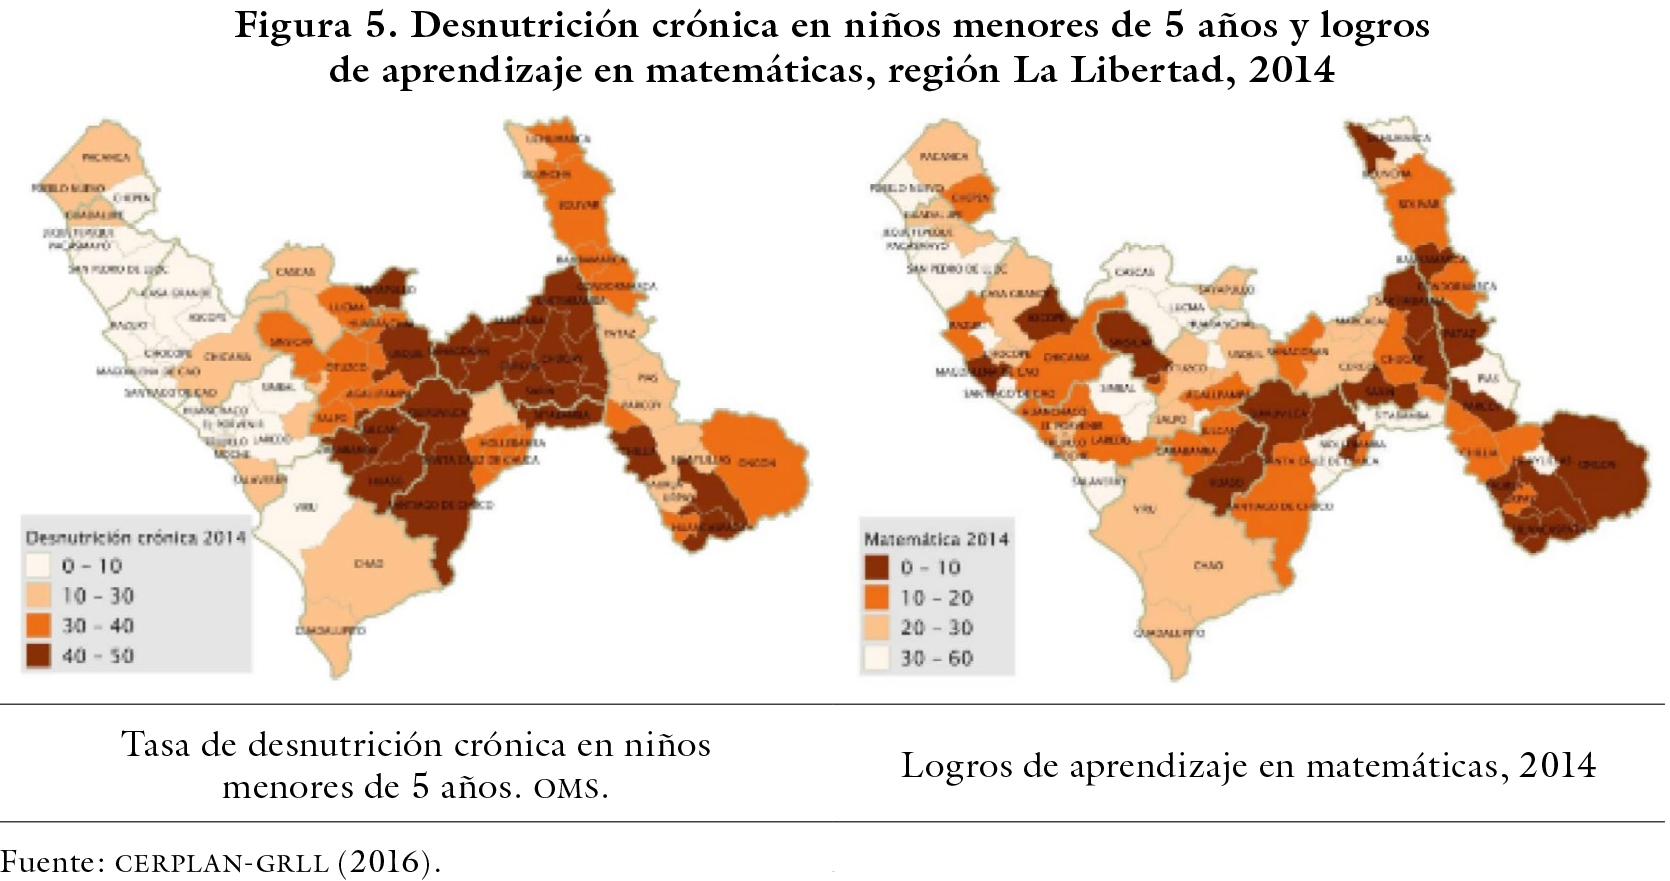 Desnutrición crónica en niños menores de 5 años y logros de aprendizaje en matemáticas, región La Libertad, 2014